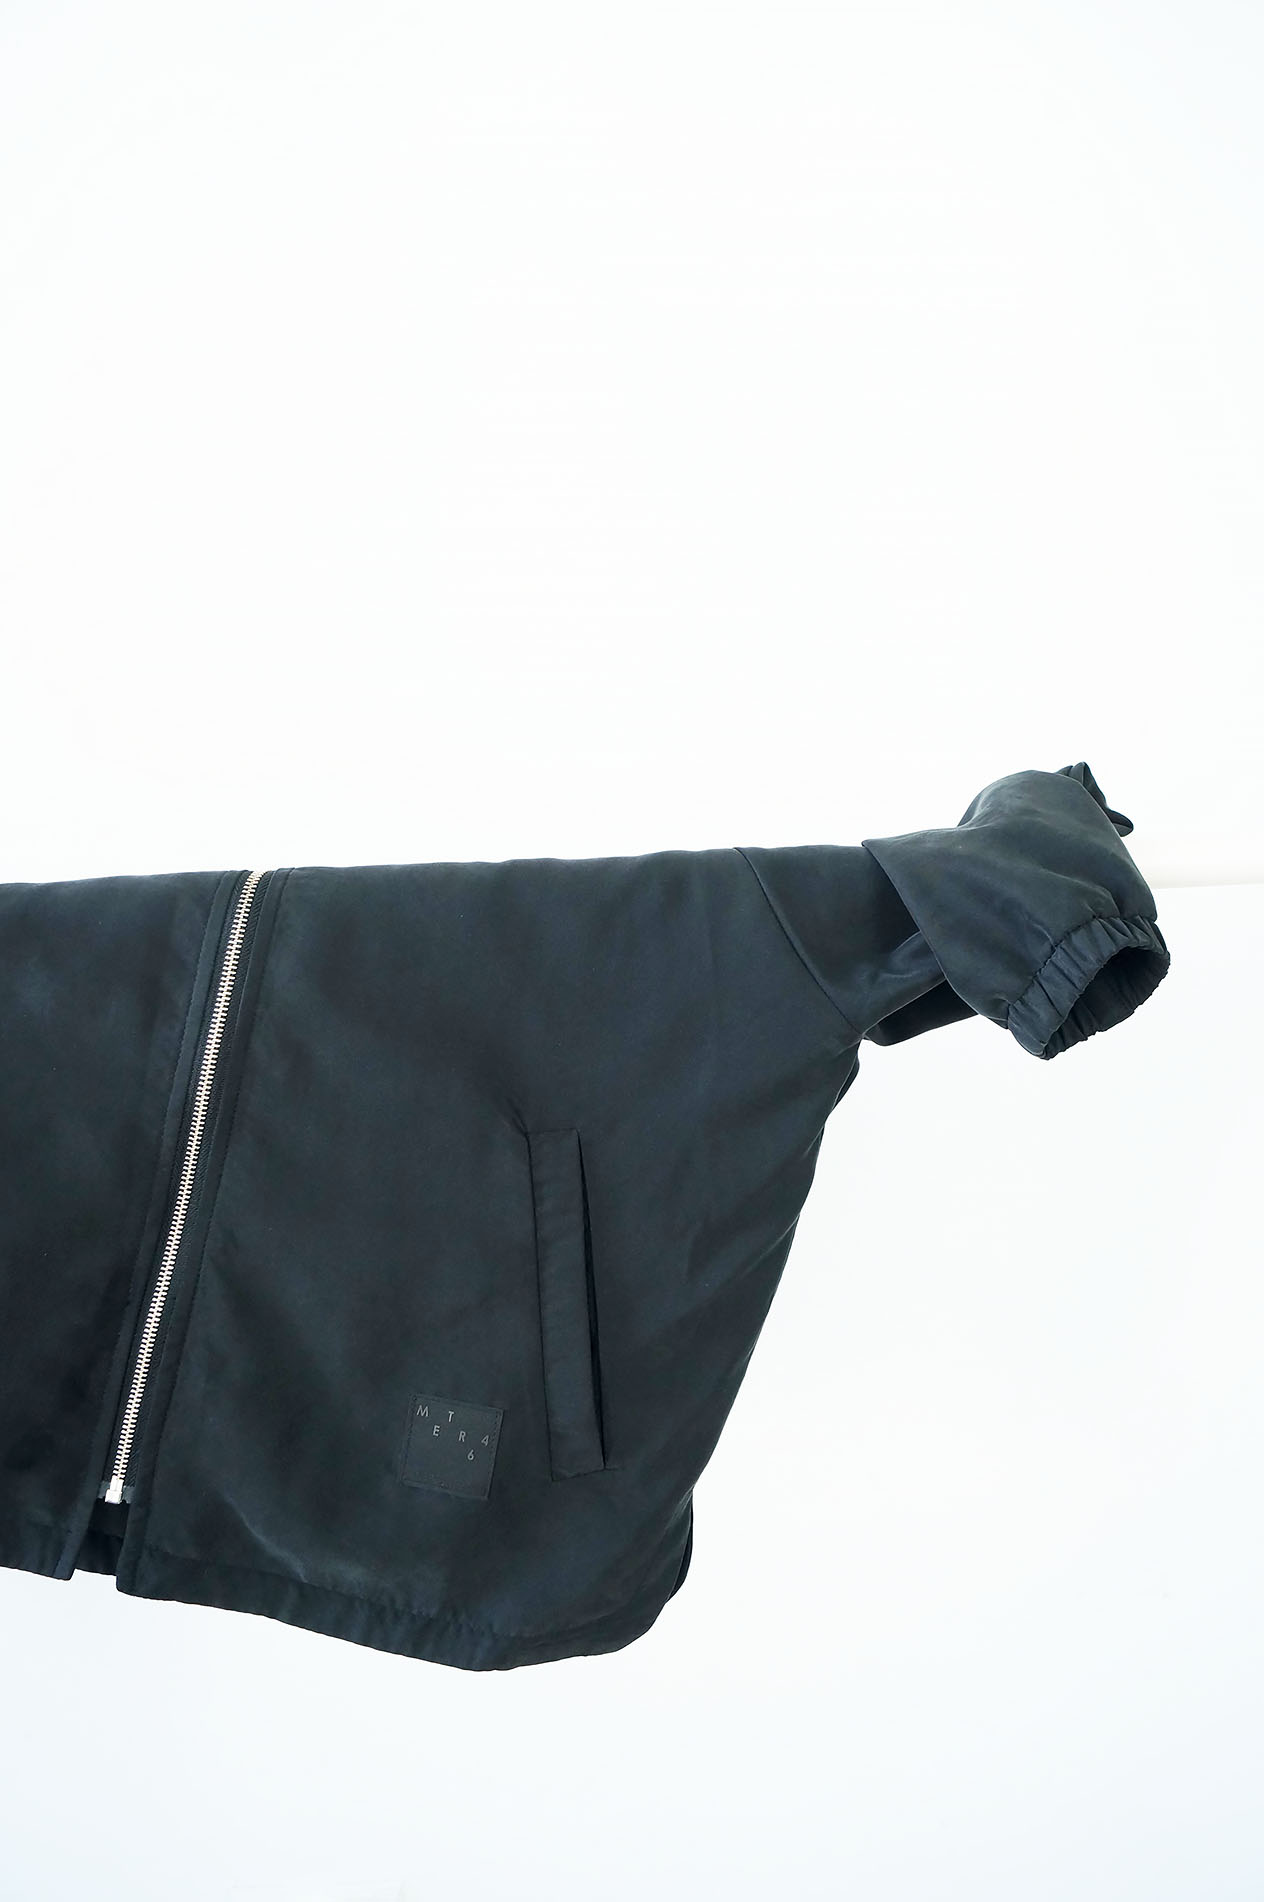 kurtka CZARNA - Damska kurtka bomberka ATRAMENT w klasycznej formie, w kolorze ciemnego, atramentowego granatu. Kurtka szyta ręcznie. Wodoodporny, poliester + bawełna